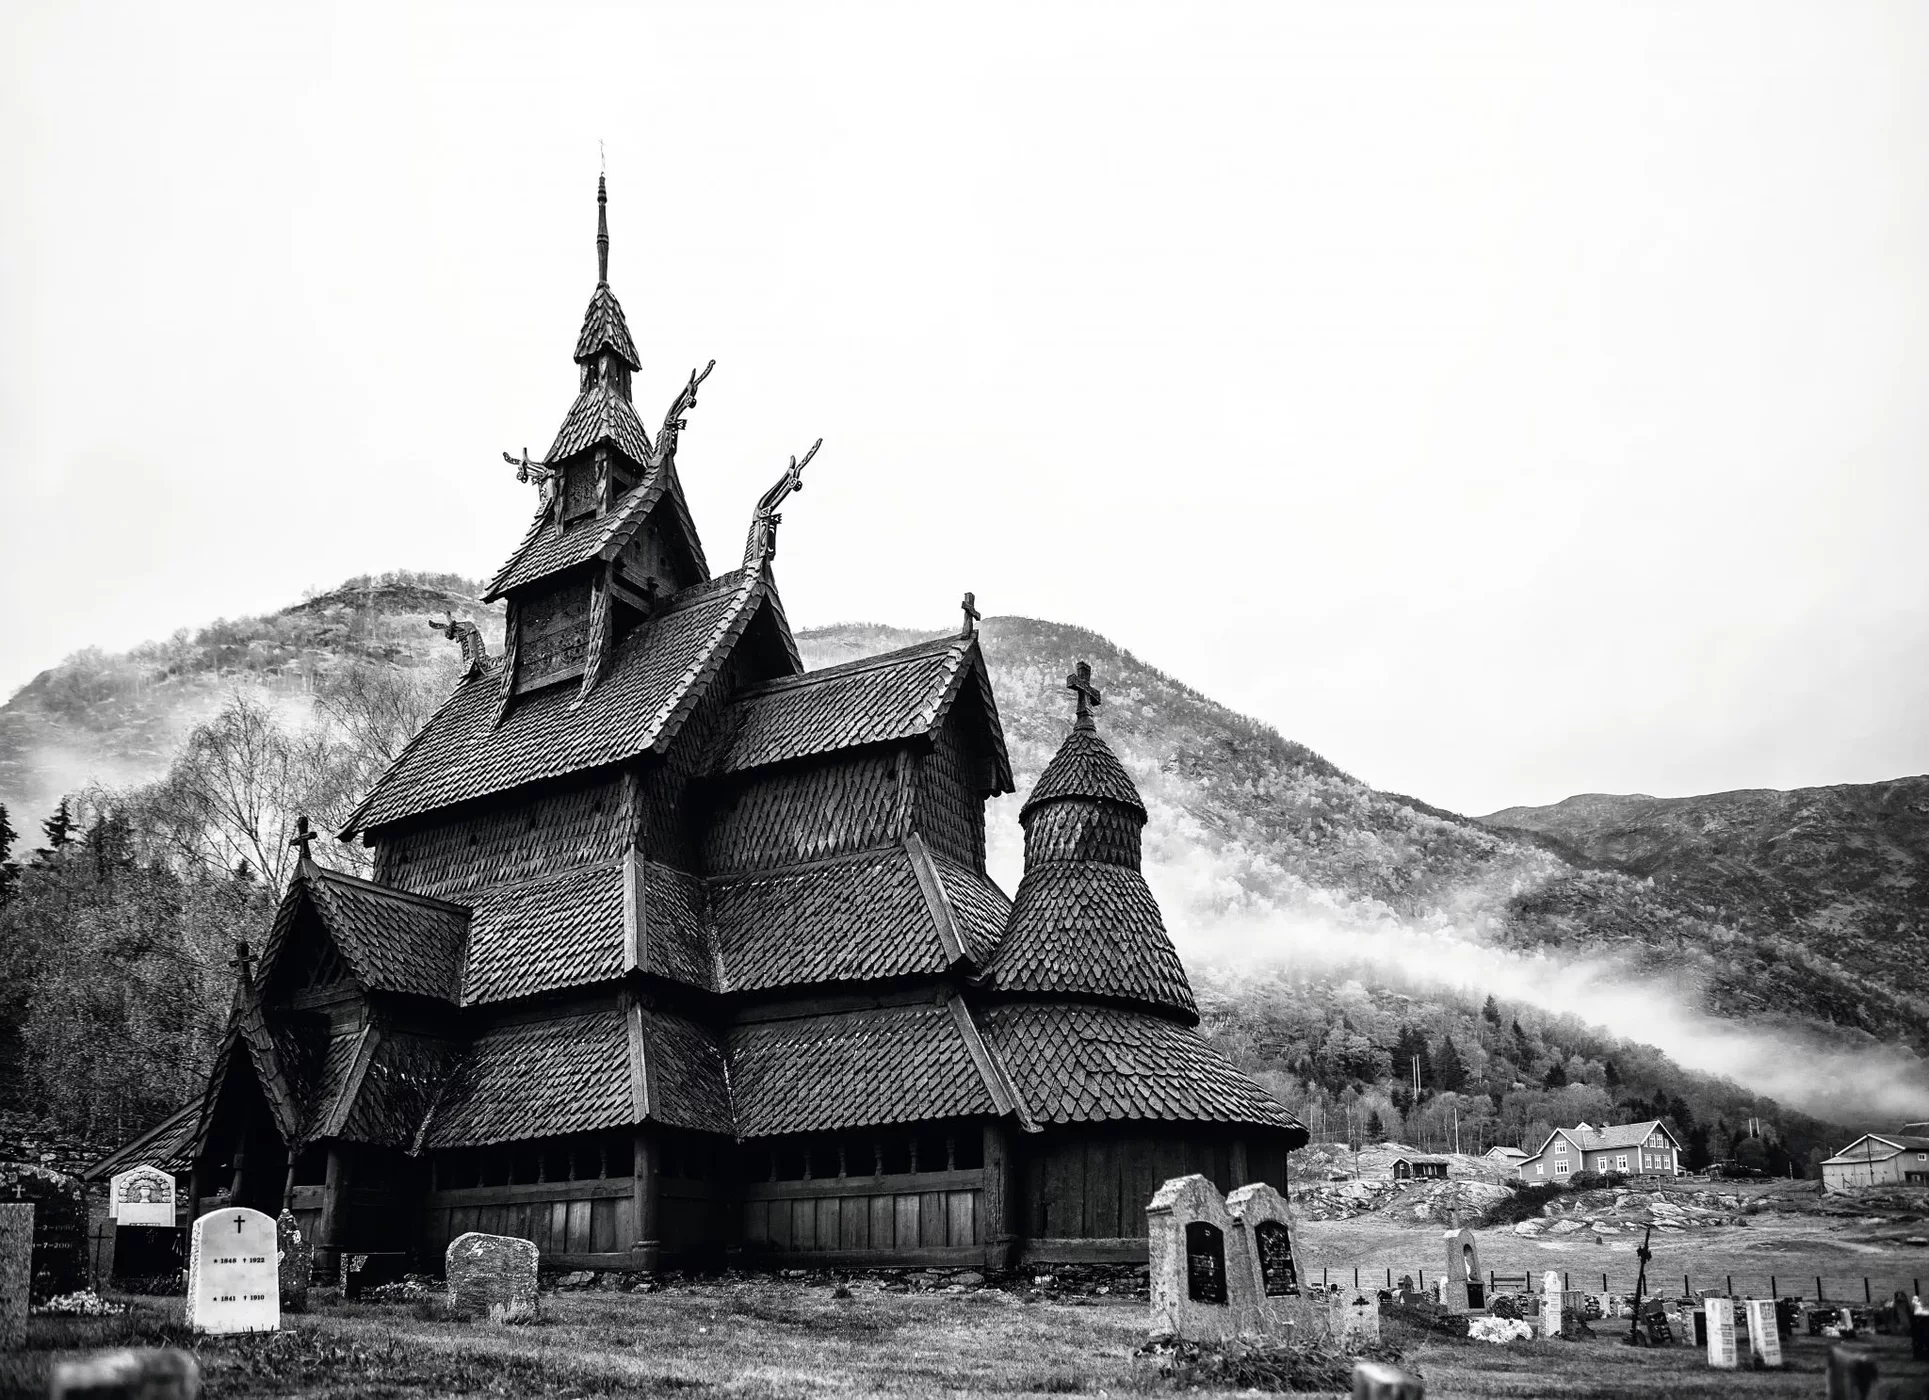 Stavkirke Borgund, Norway